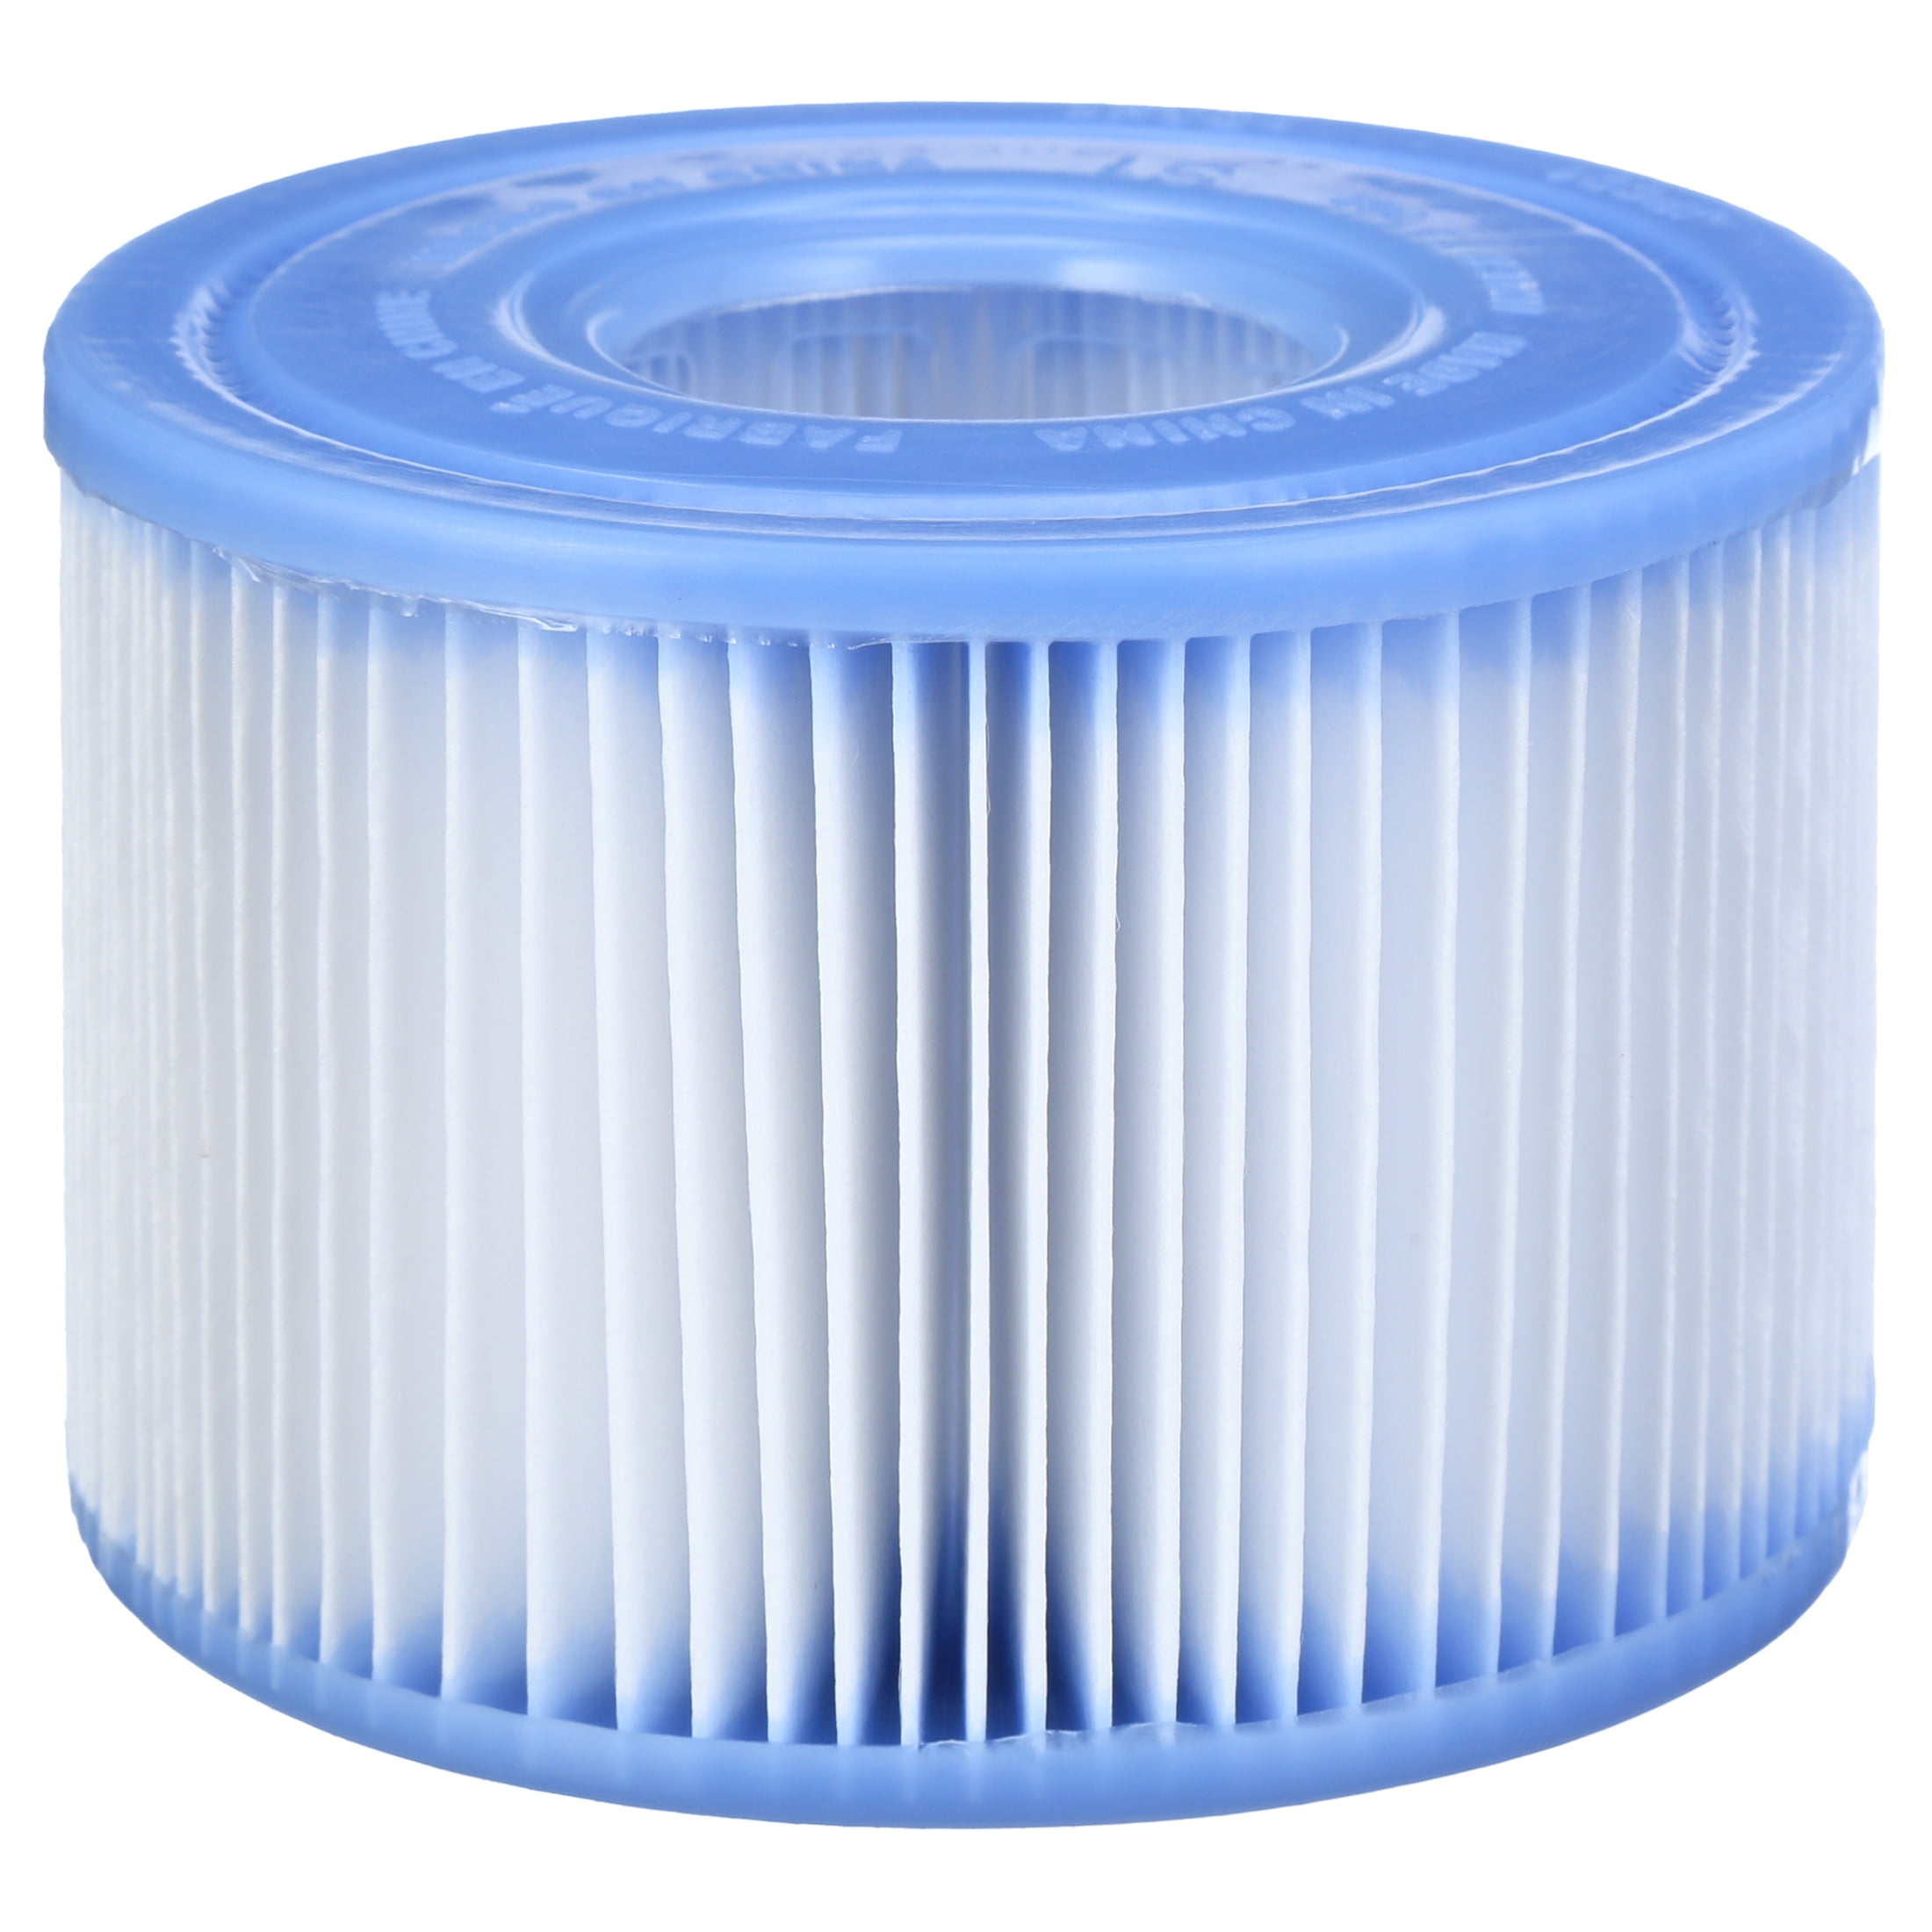 Intex 29011E Typ S1 PureSpa Easy Set Pool Spa Hot Tub  filterersättningspatroner (6 filter), blå och vit